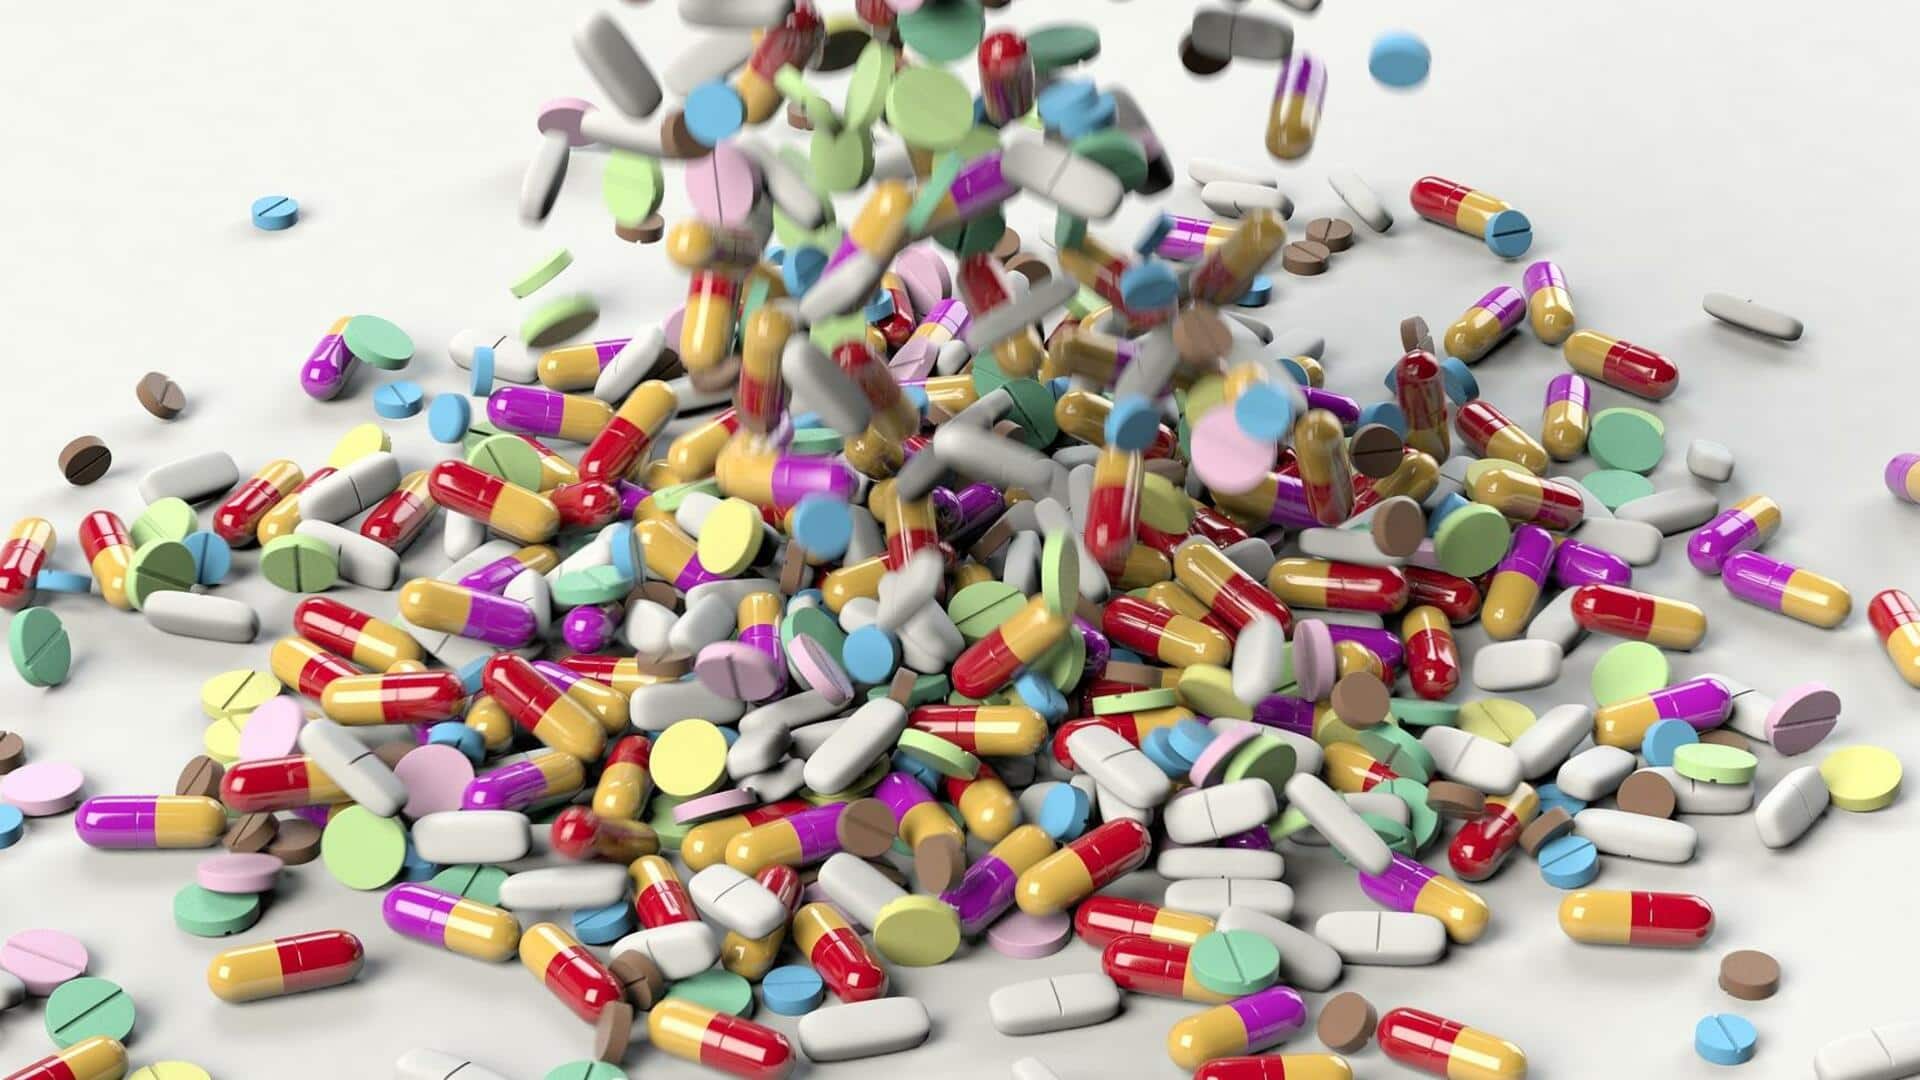 नकली और घटिया दवा बनाने के लिए 18 कंपनियों के लाइसेंस निरस्त, 26 कोे नोटिस- रिपोर्ट